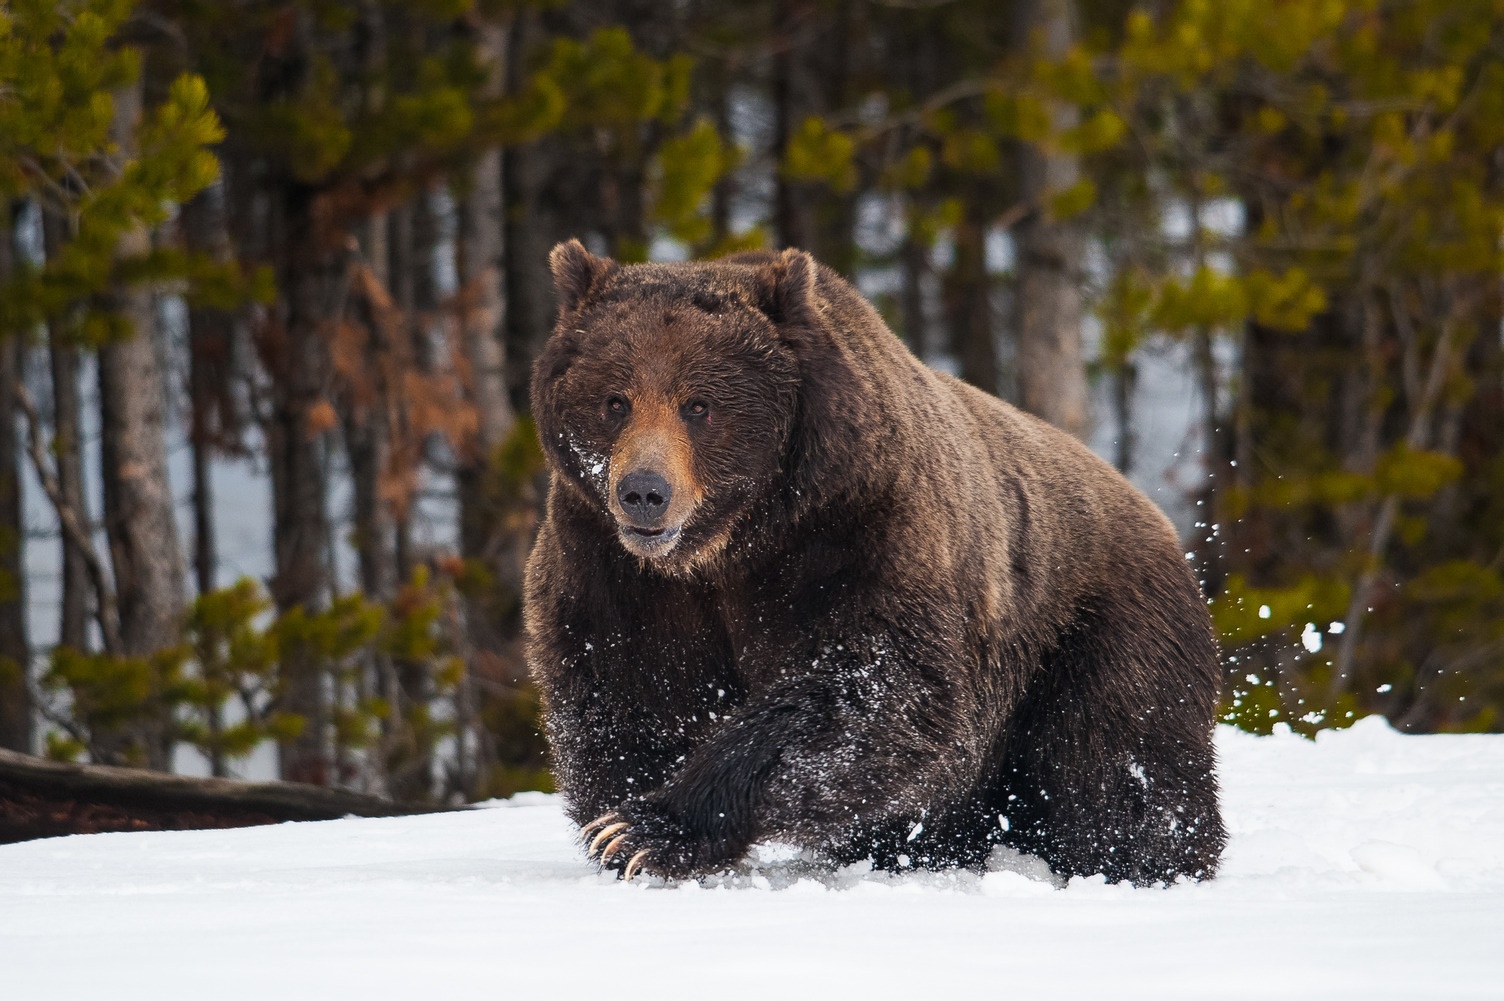 A dark brown bear with long claws runs through the snow.